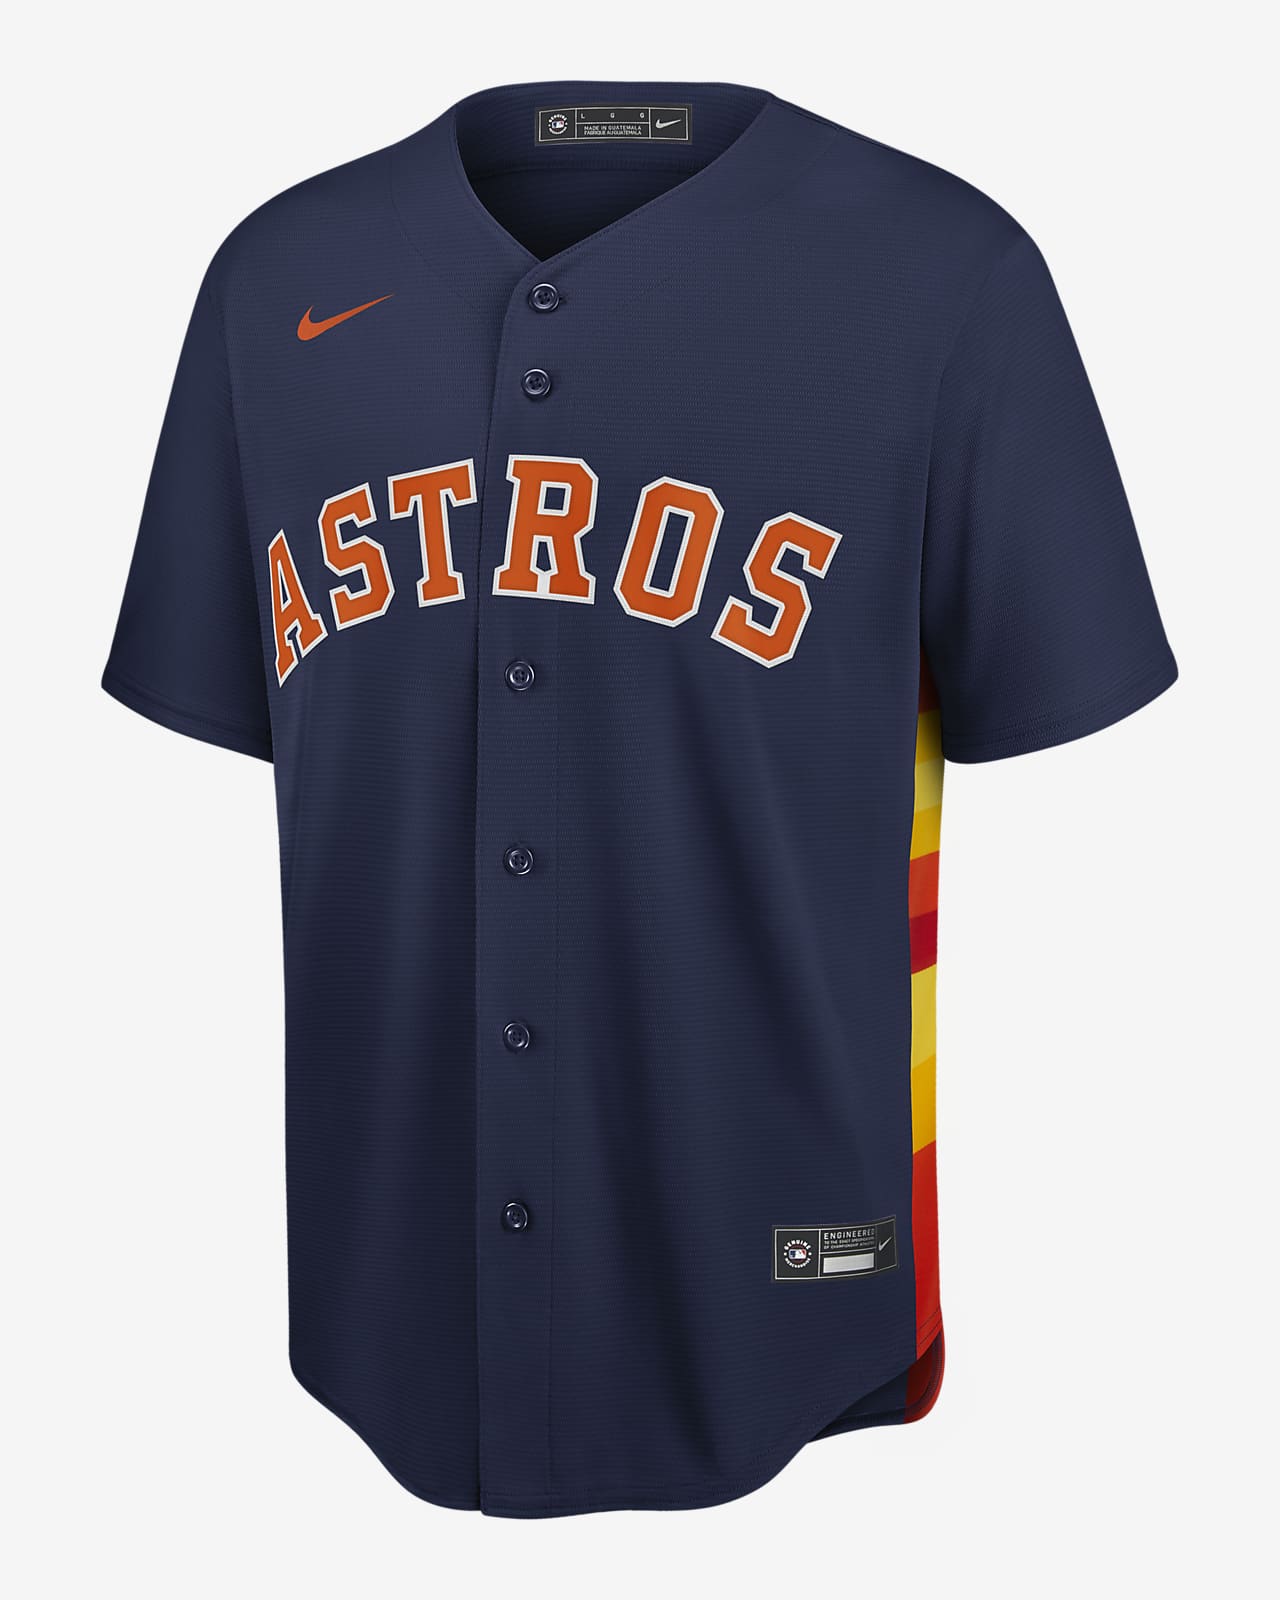 los astros jersey for sale